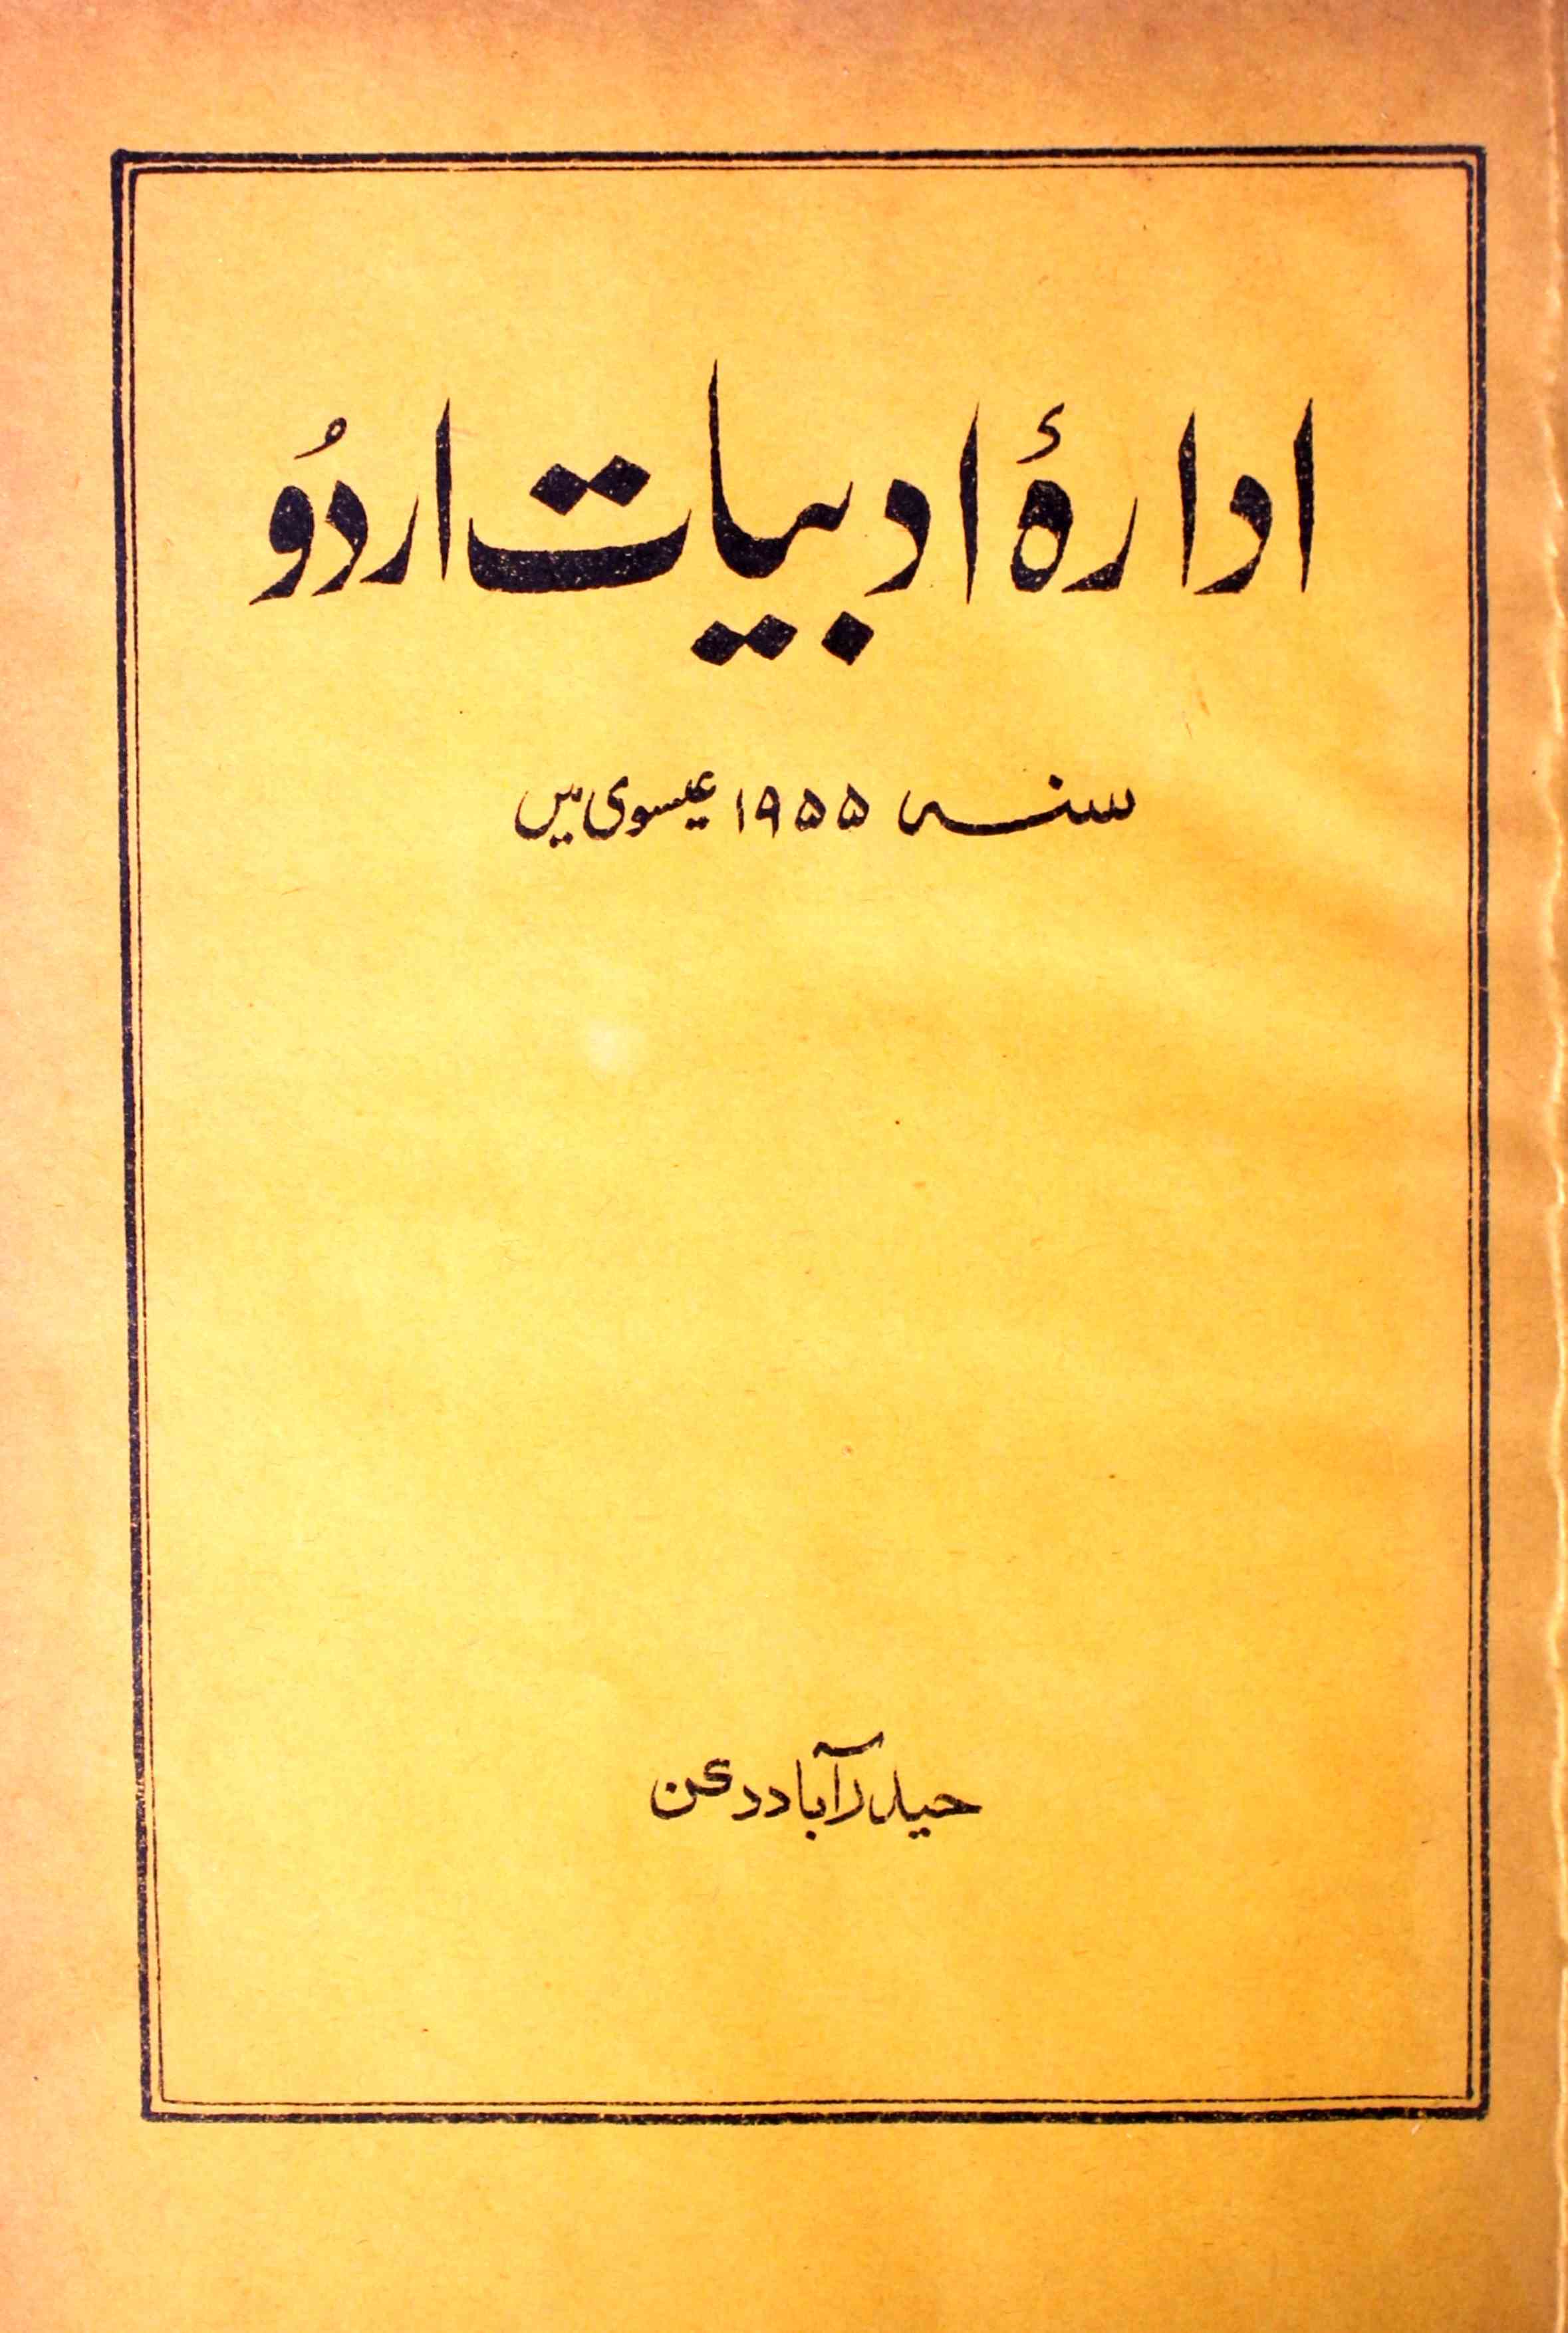 ادارہ ادبیات اردو 1955 میں